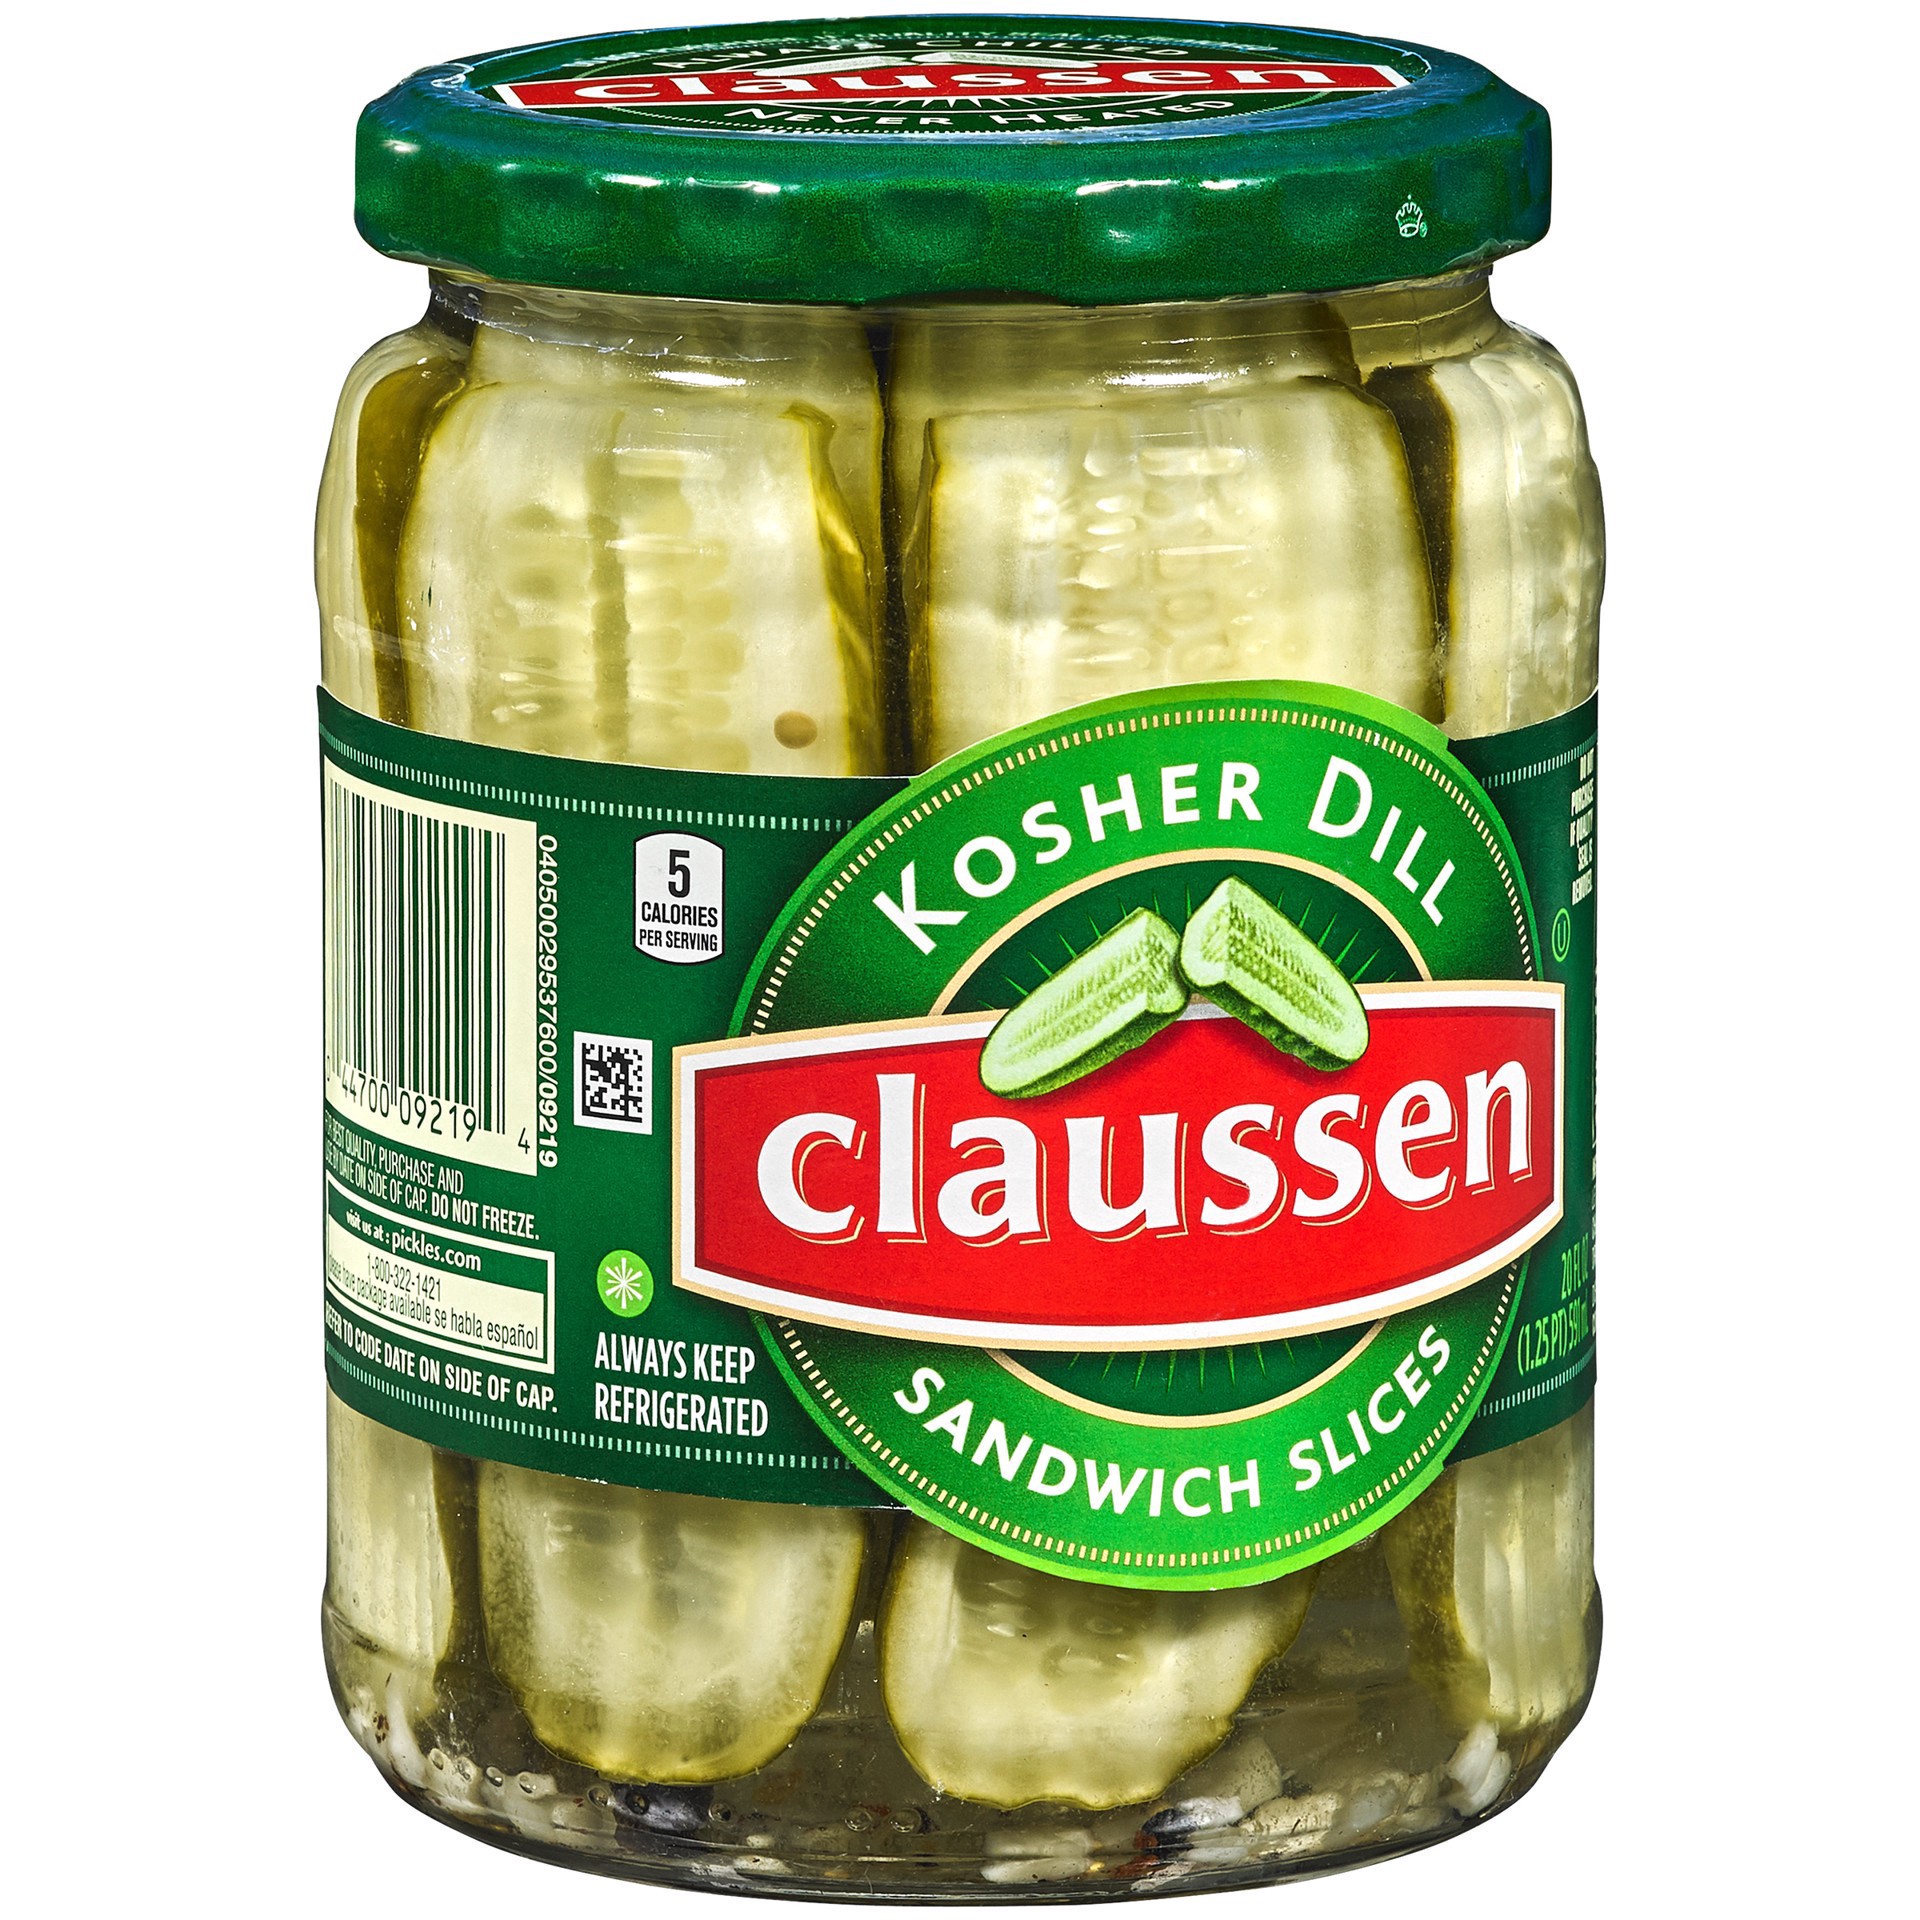 slide 89 of 144, Claussen Kosher Dill Pickle Sandwich Slices, 20 fl. oz. Jar, 20 fl oz